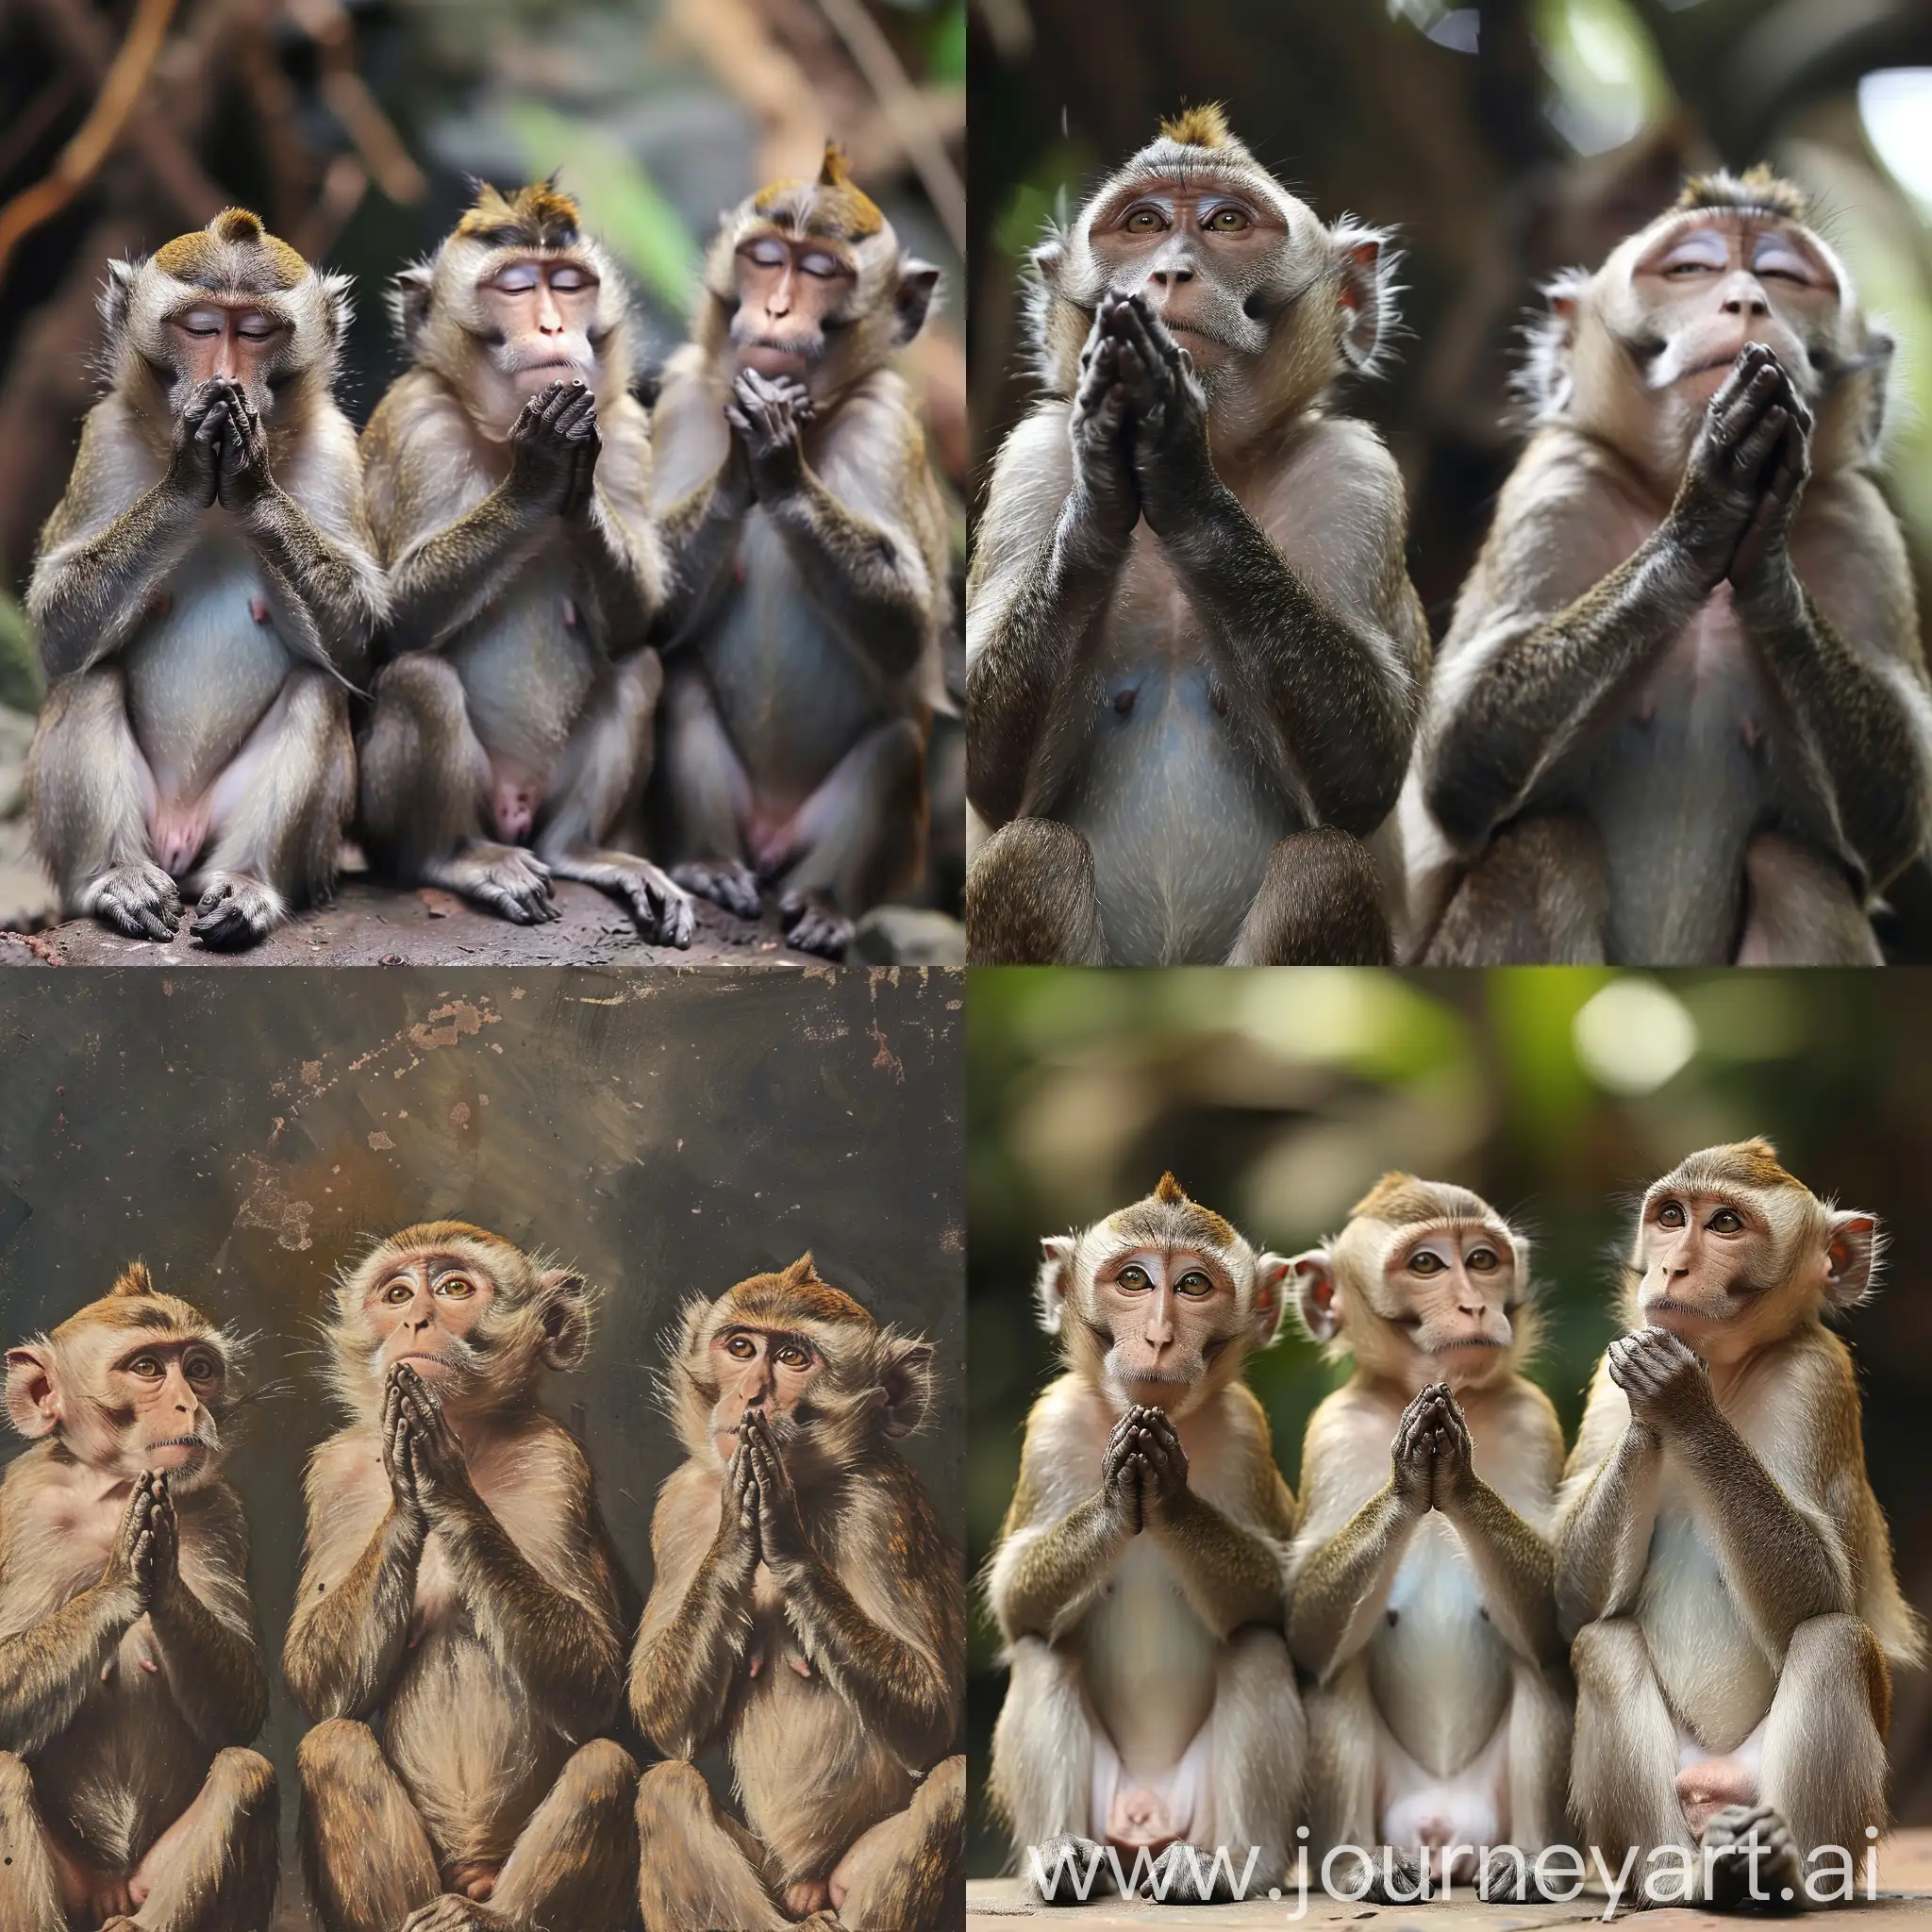 Praying-Monkeys-Peaceful-Scene-of-Monkeys-Engaged-in-Devotional-Ritual